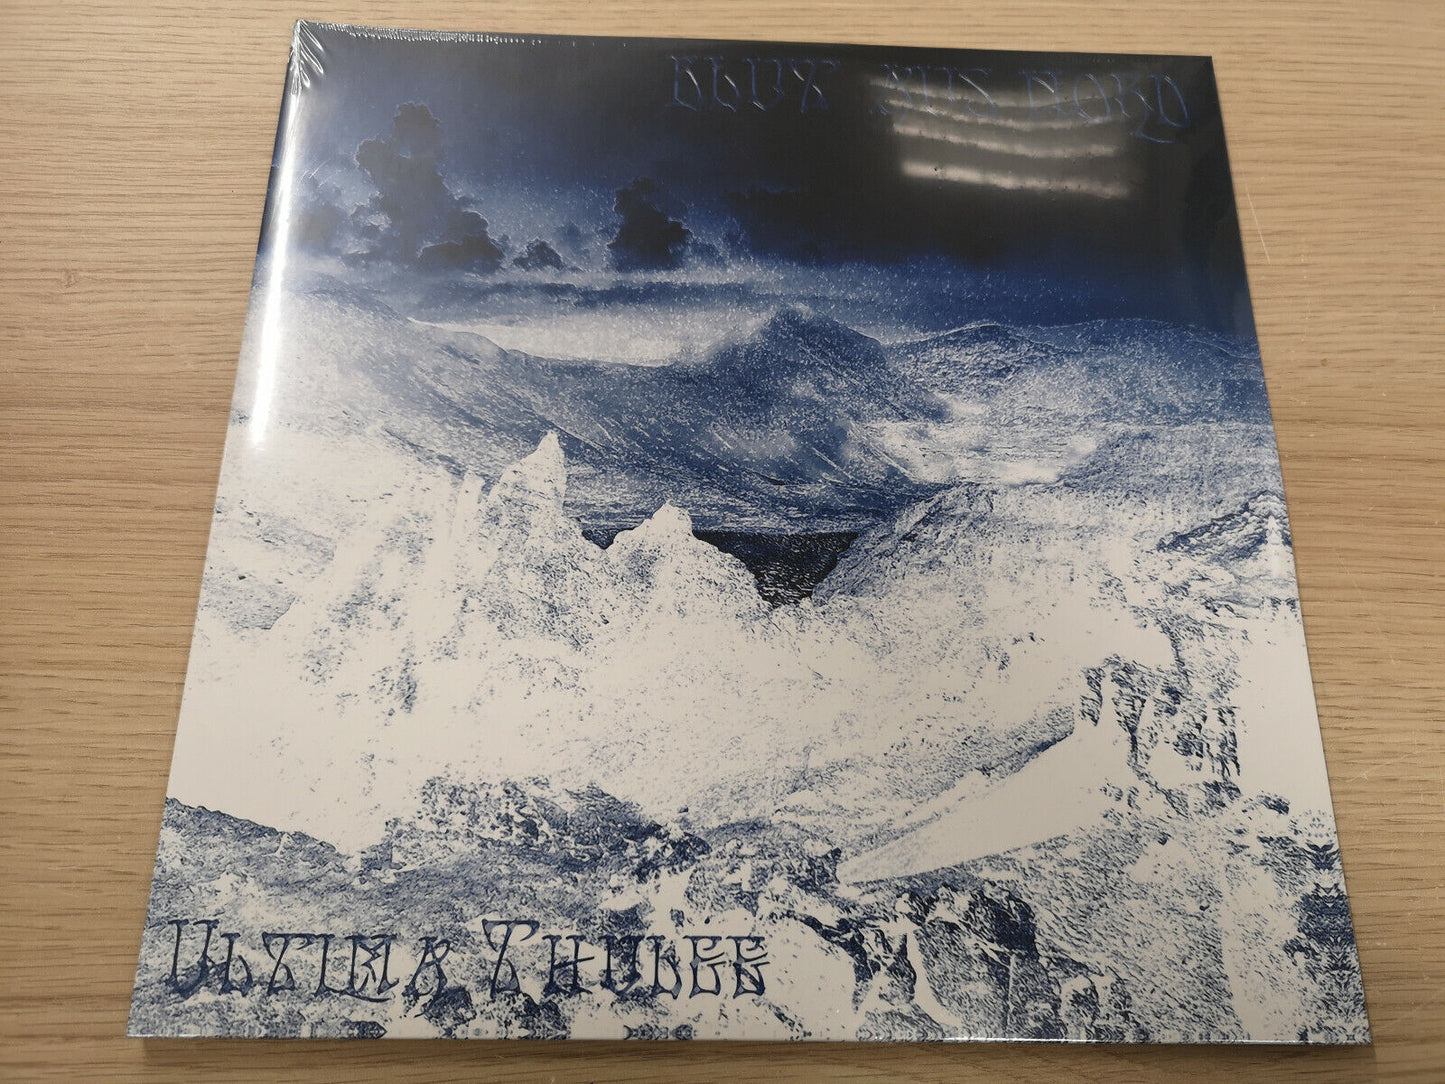 Blut Aus Nord "Ultima Thulée"  Sealed Re Double Blue Vinyl Ltd